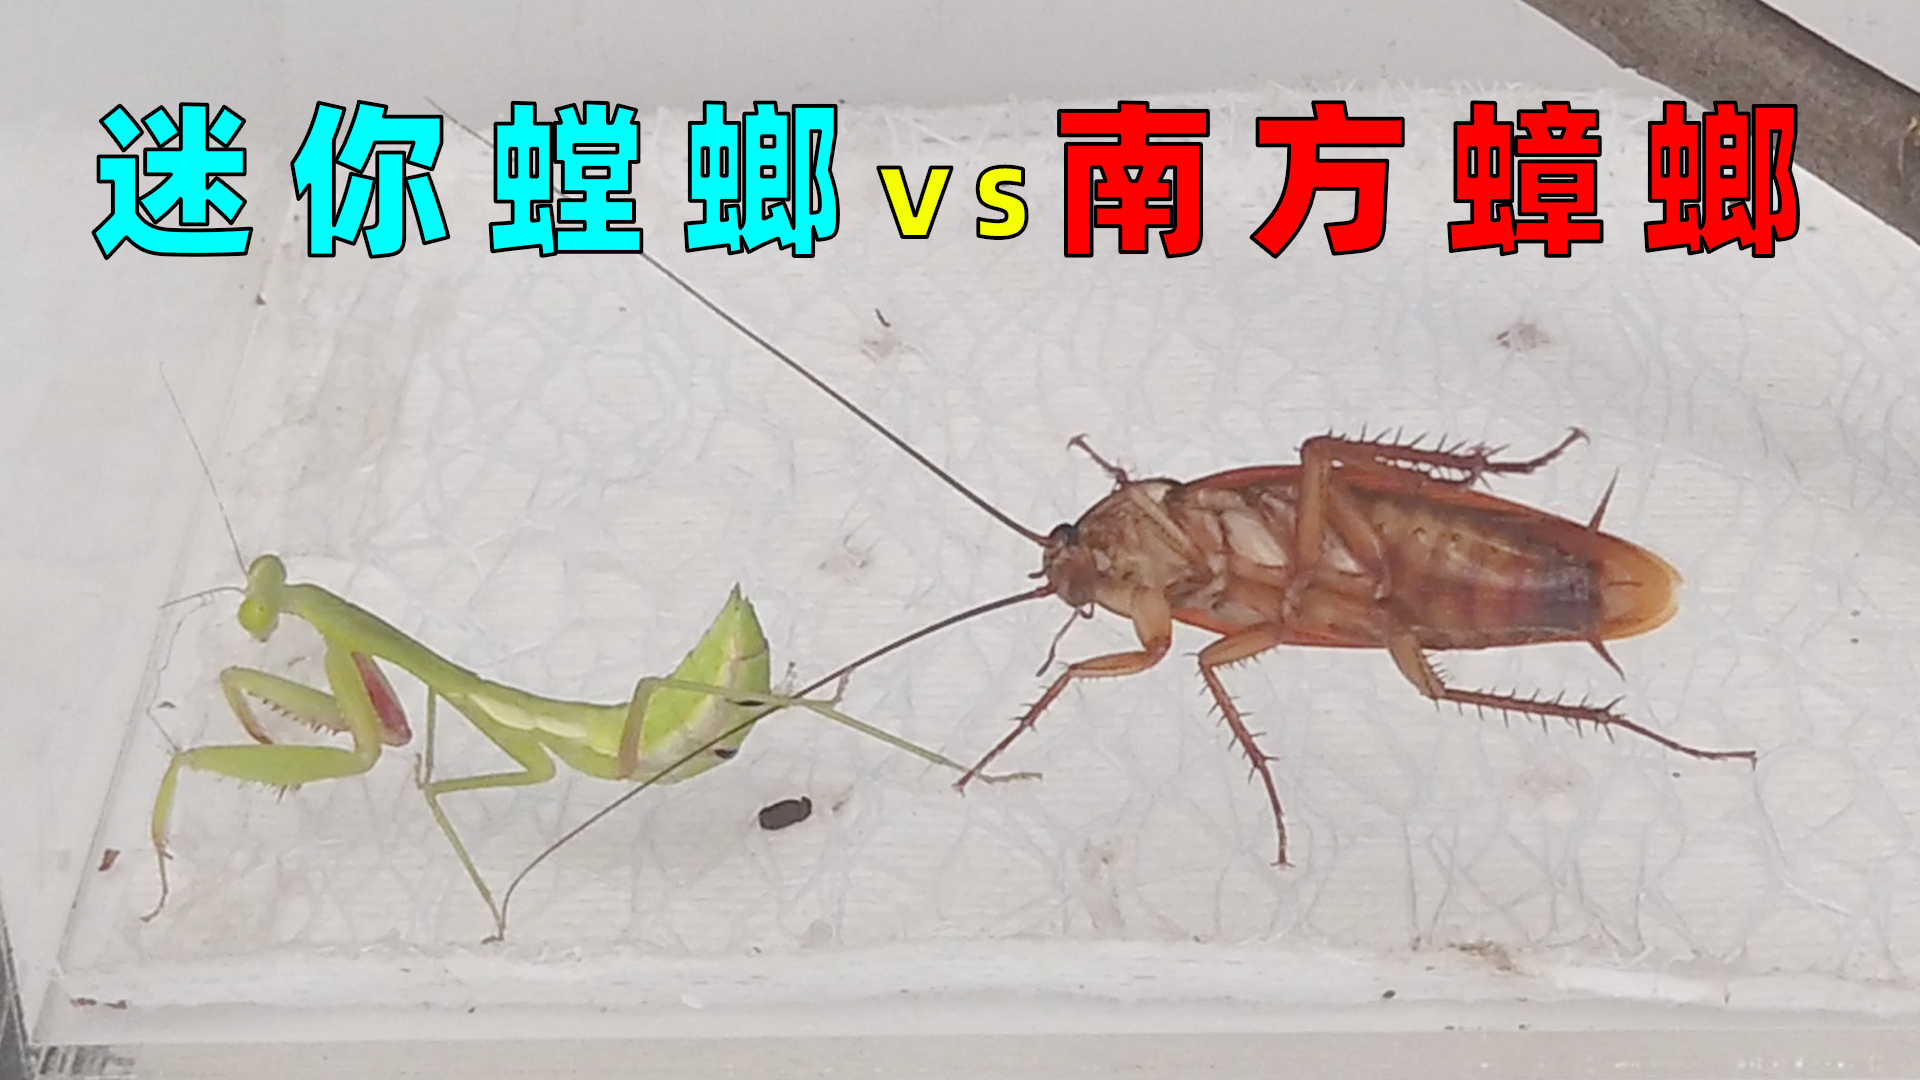 迷你小螳螂vs南方大蟑螂,这反应太真实了!